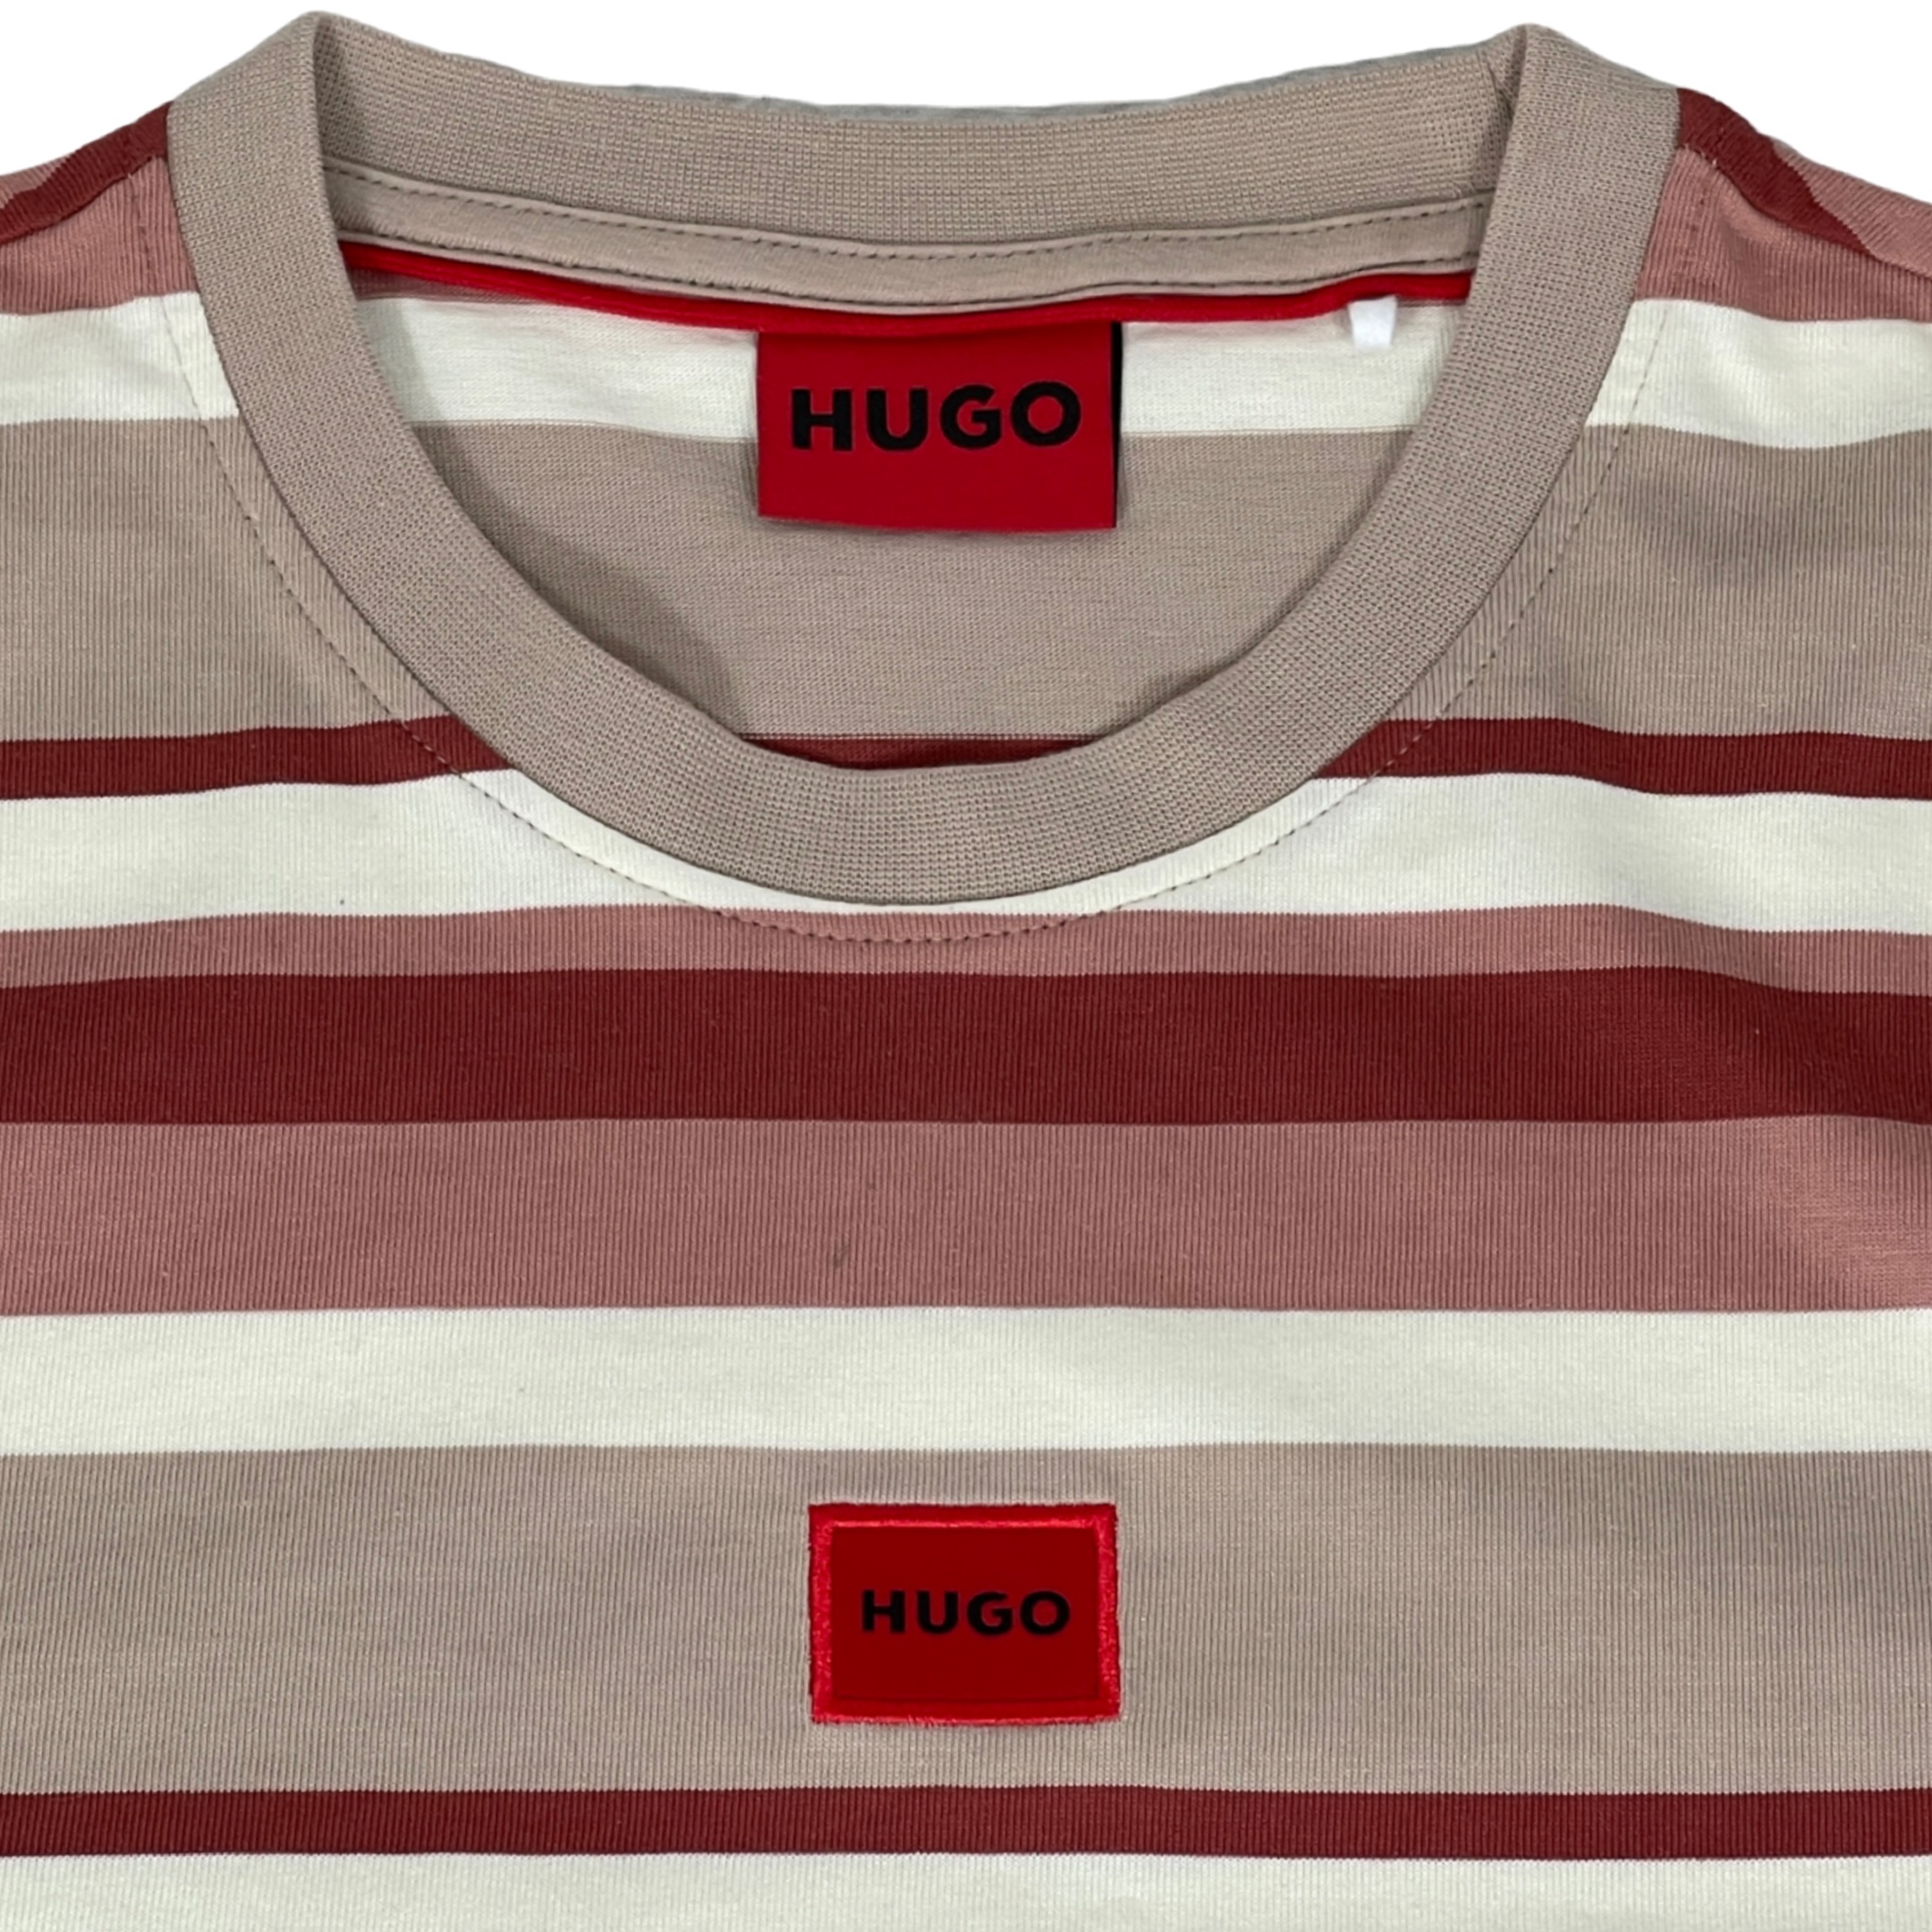 HUGO 50504999 Diragolino_S 10257069 01 Herren Streifen T-Shirt Beige/Terrakotta/Braun